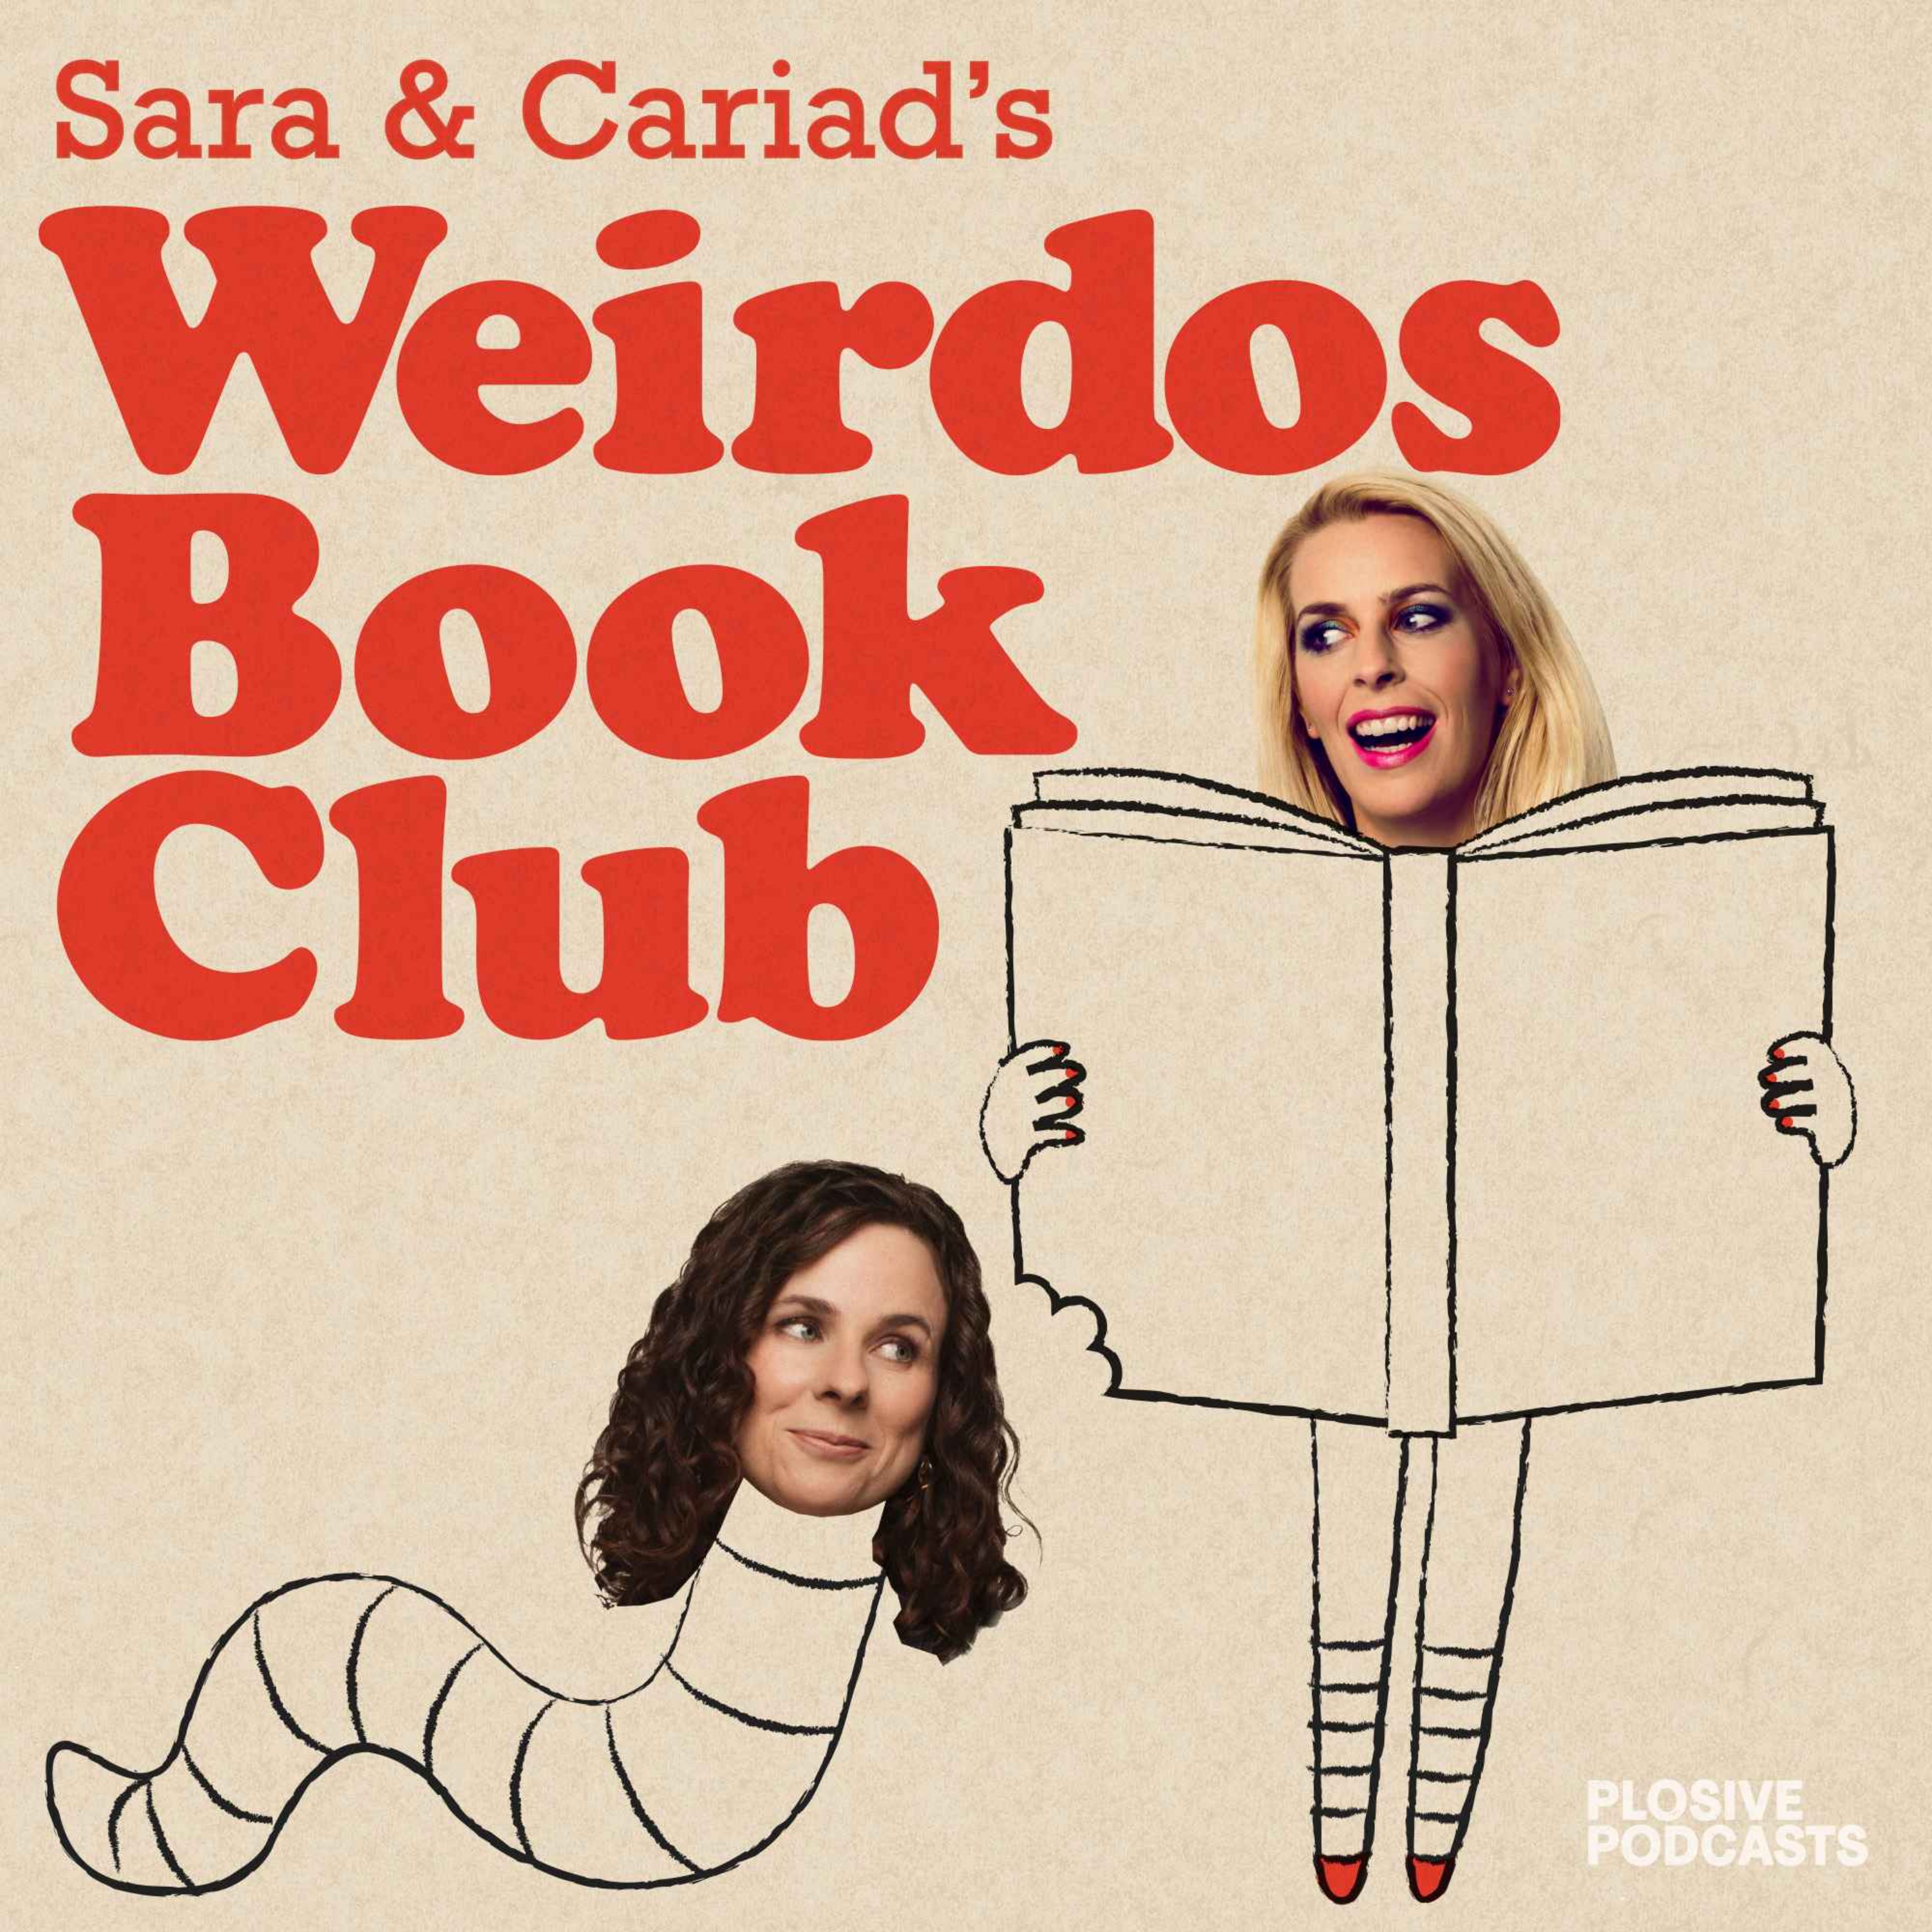 Sara & Cariad's Weirdos Book Club podcast show image